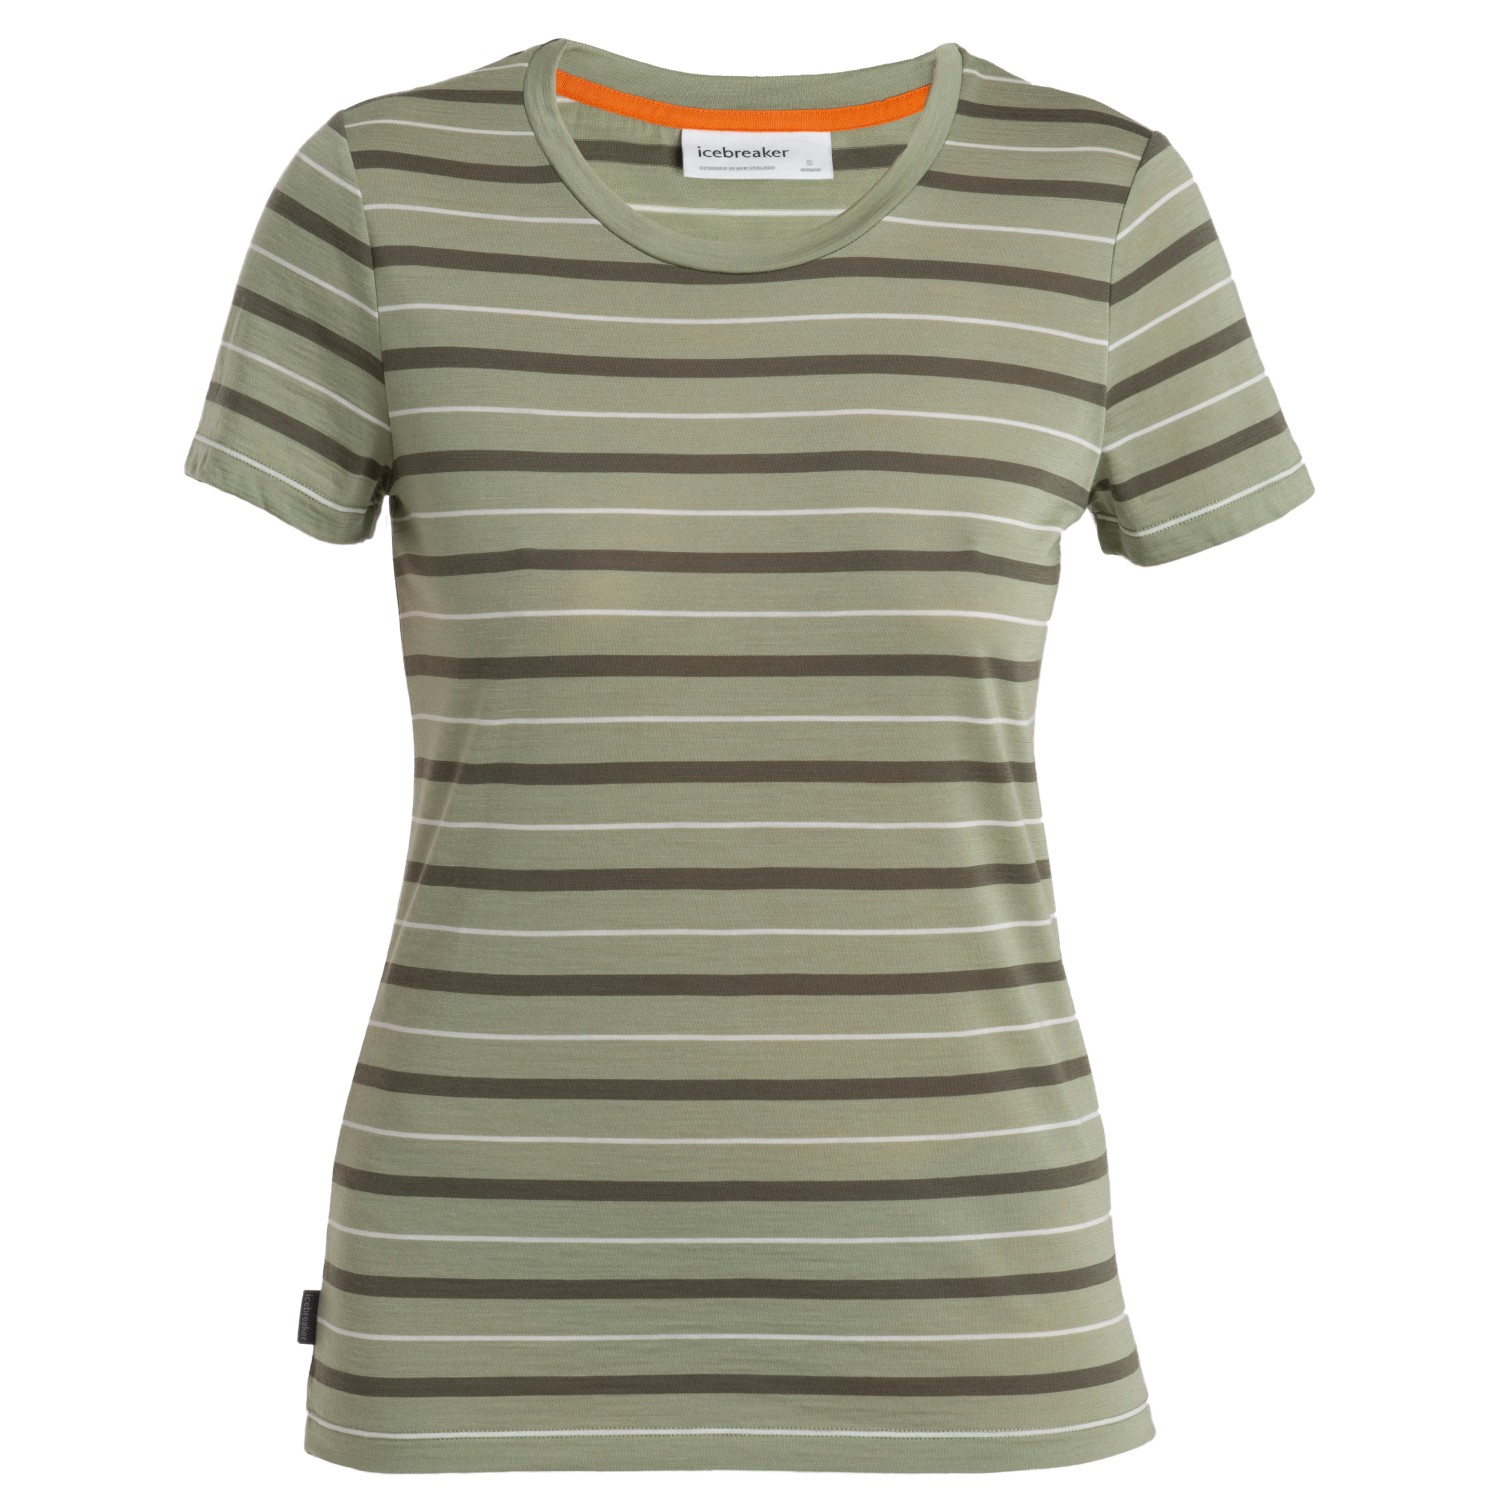 Рубашка из мериноса Icebreaker Women's Wave S/S Tee Stripe, цвет Lichen/Loden/Snow/Stripe